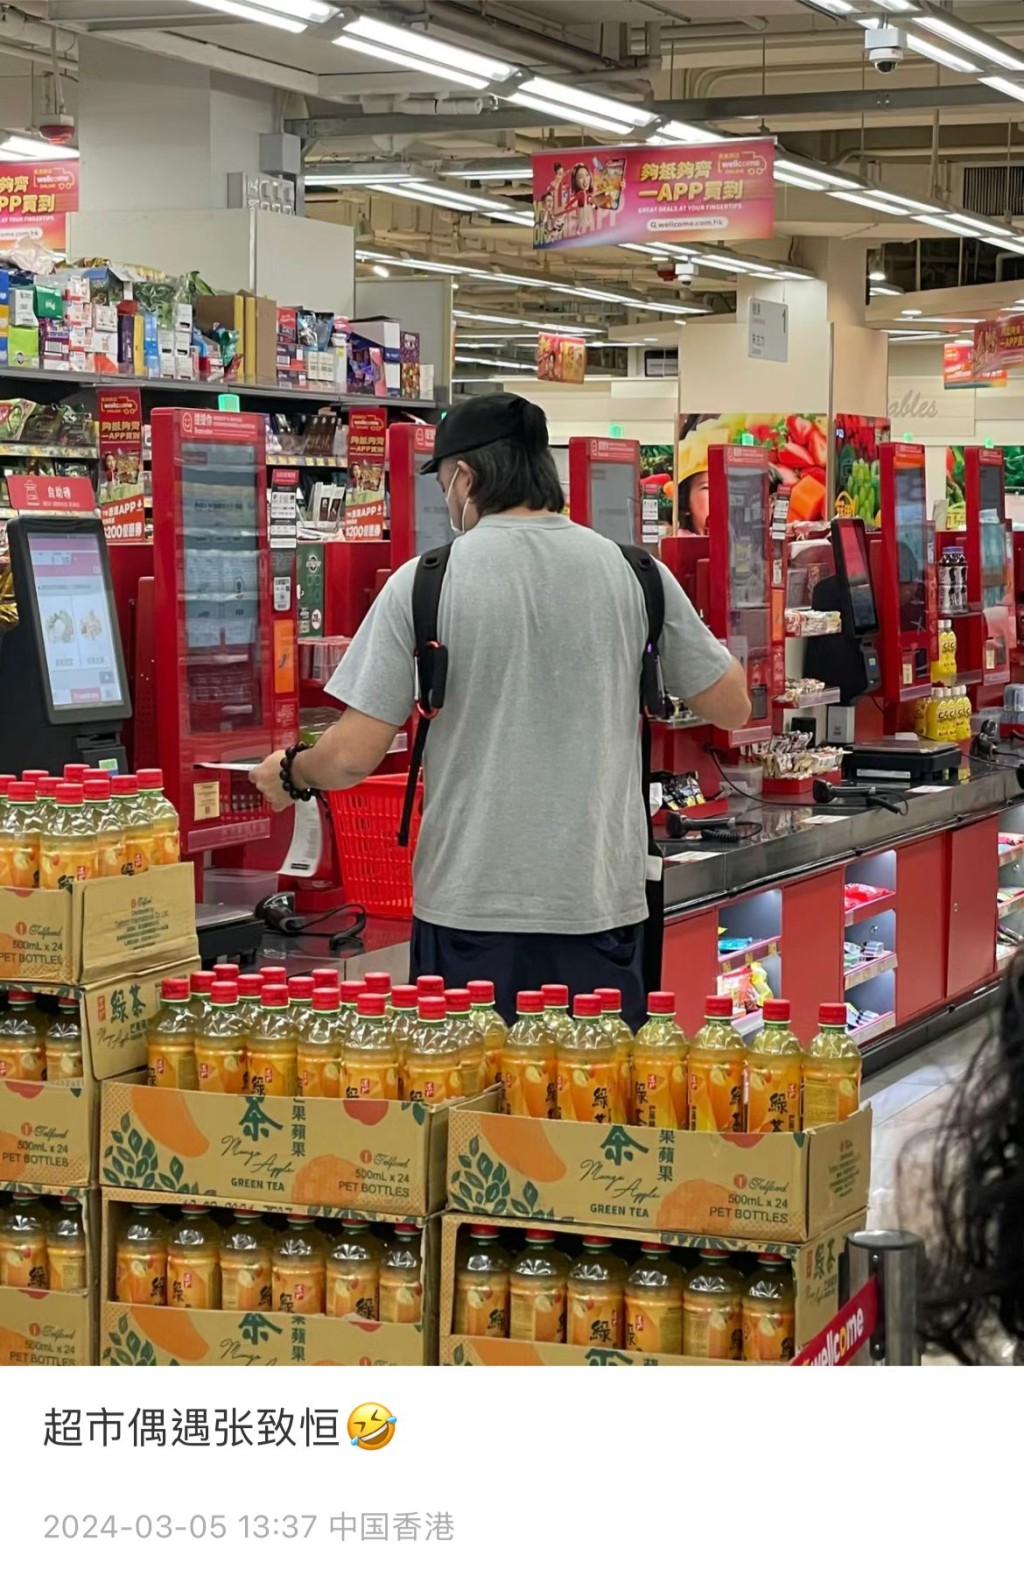 昨午（5日）有網民於社交網聲稱在港一間超市偶遇張致恒，並附上一張對方的背影圖。